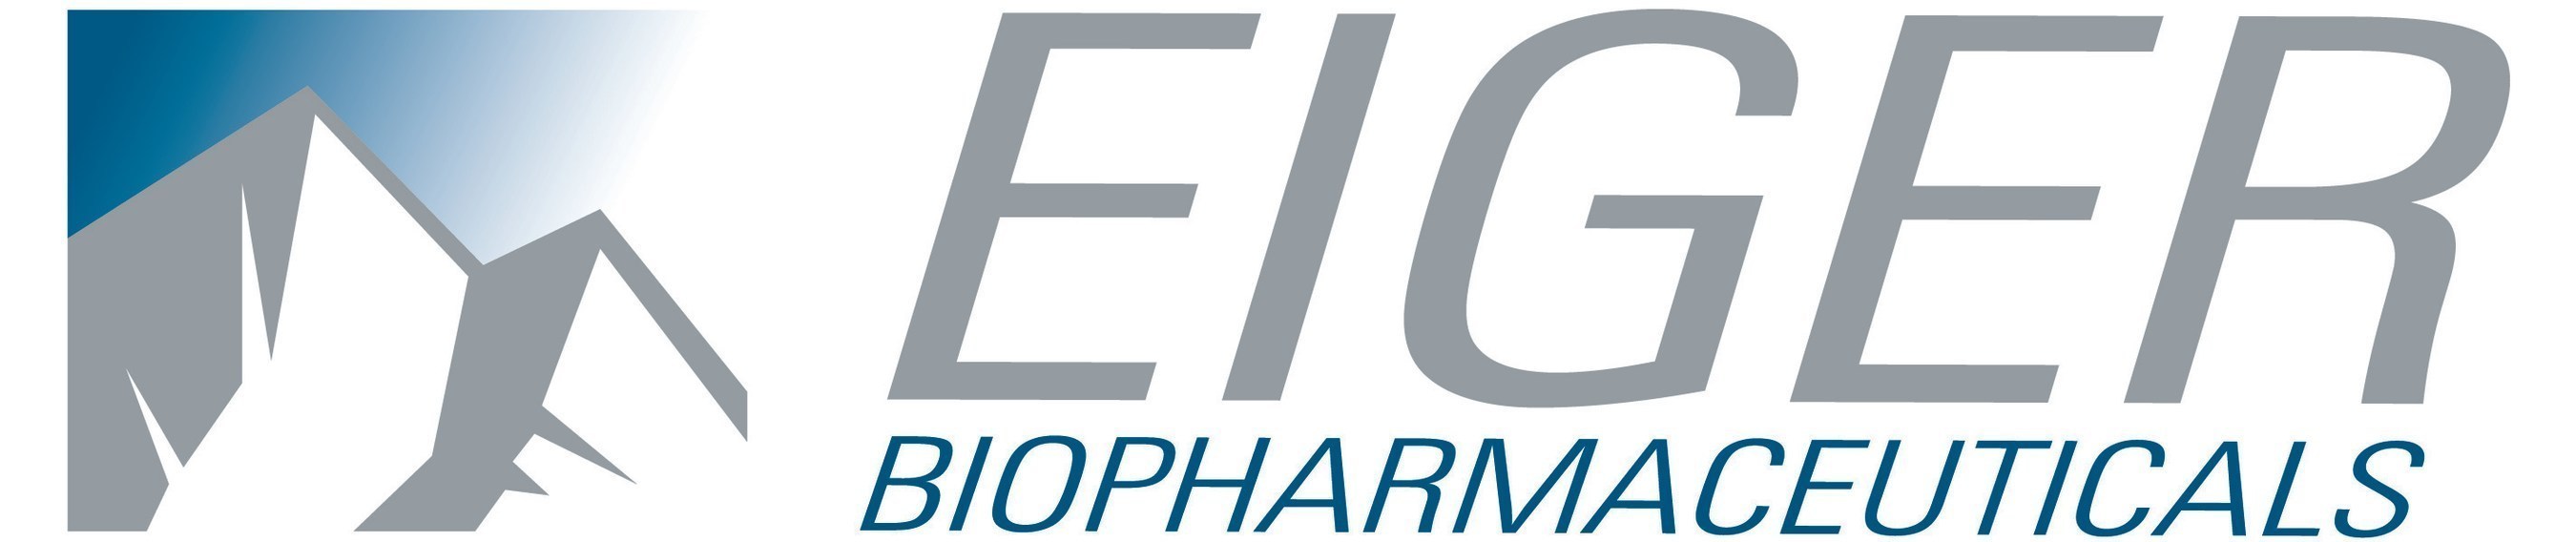 Eiger BioPharmaceuticals (PRNewsFoto/Eiger BioPharmaceuticals, Inc.)